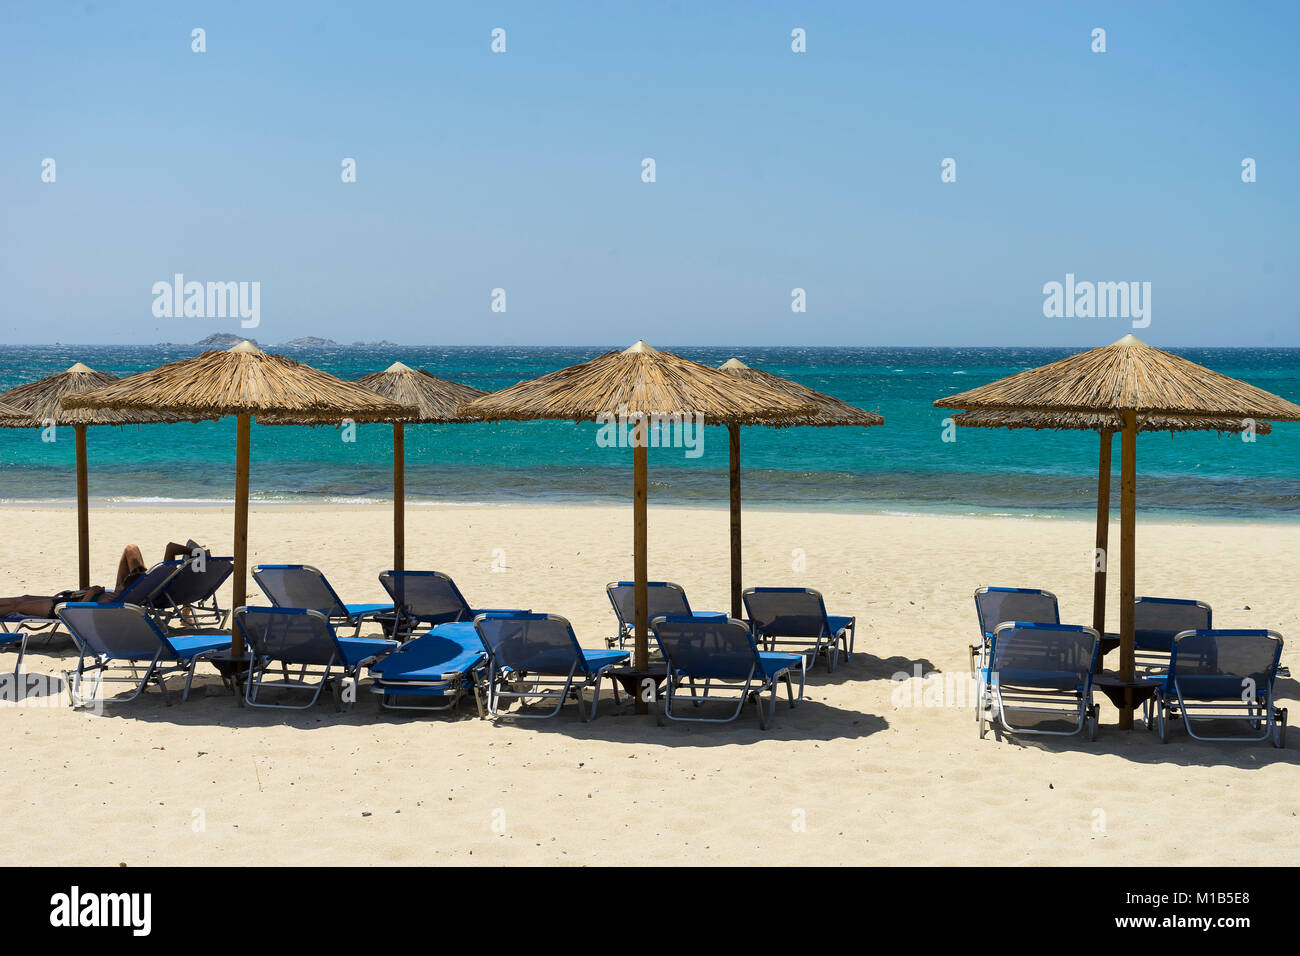 Naxos beach resort. Naxos island, Greece Stock Photo